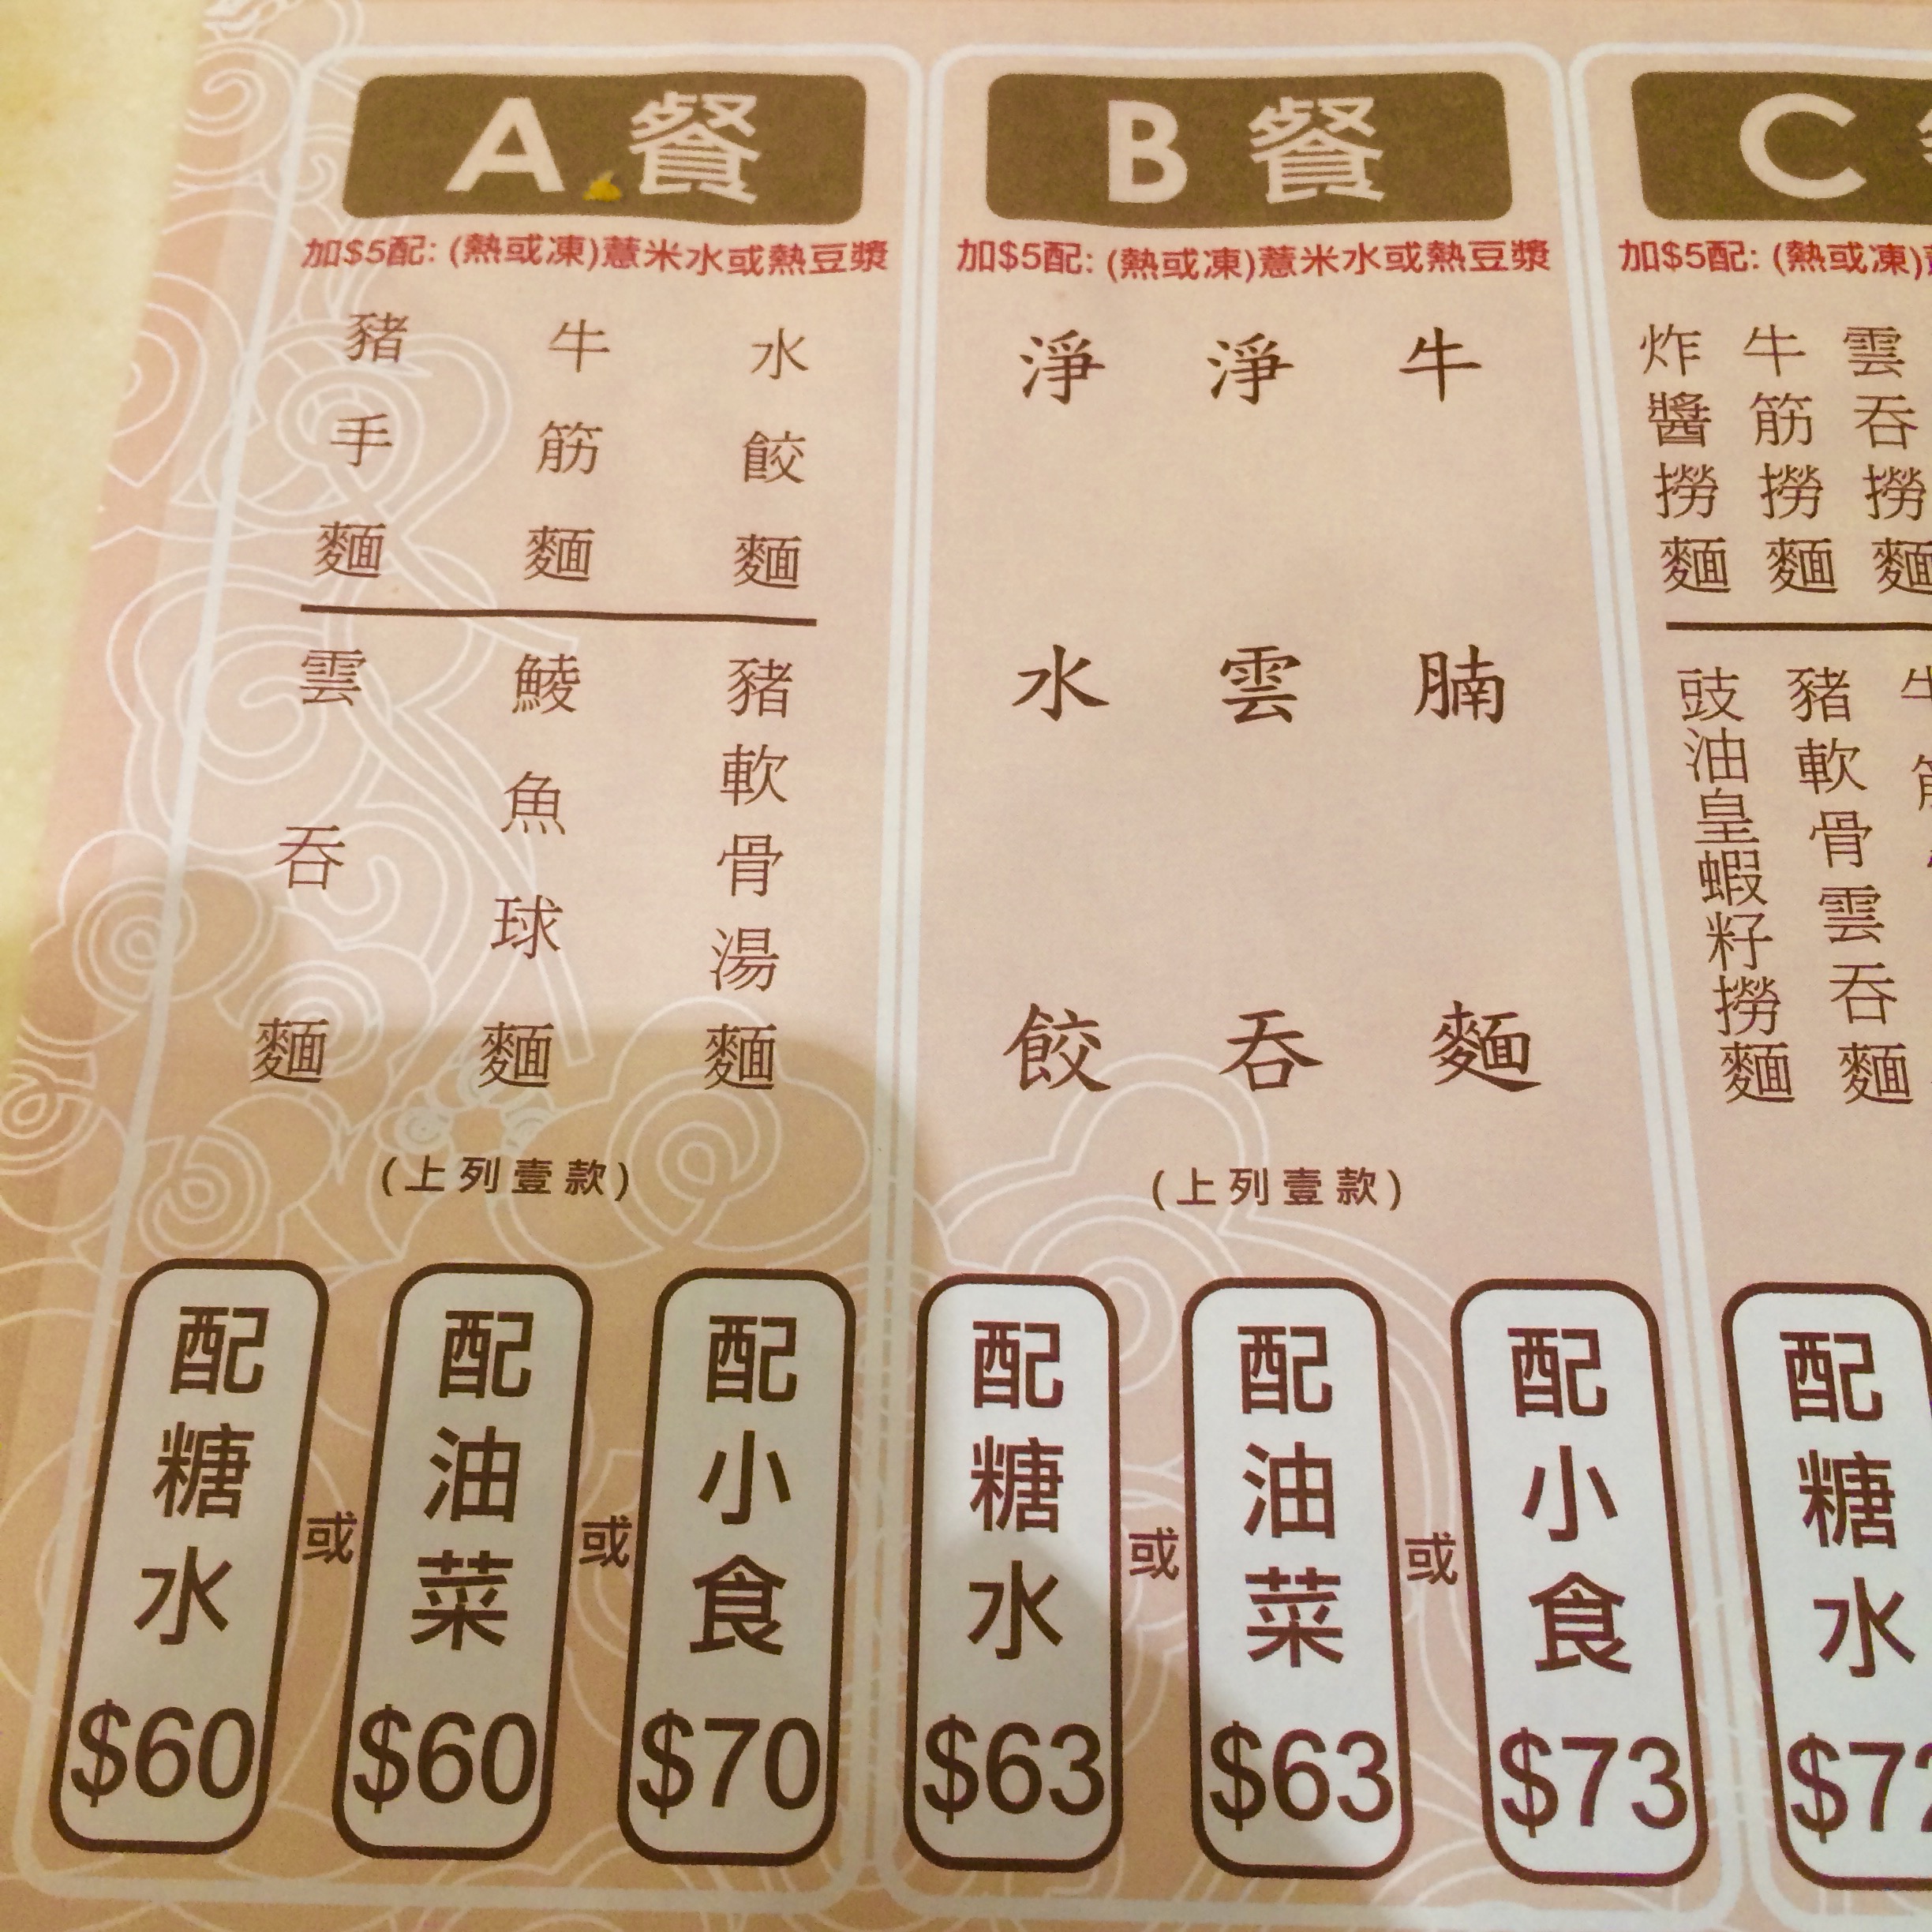 香港で人気のワンタン麺-池記雲呑麺のメニュー-2